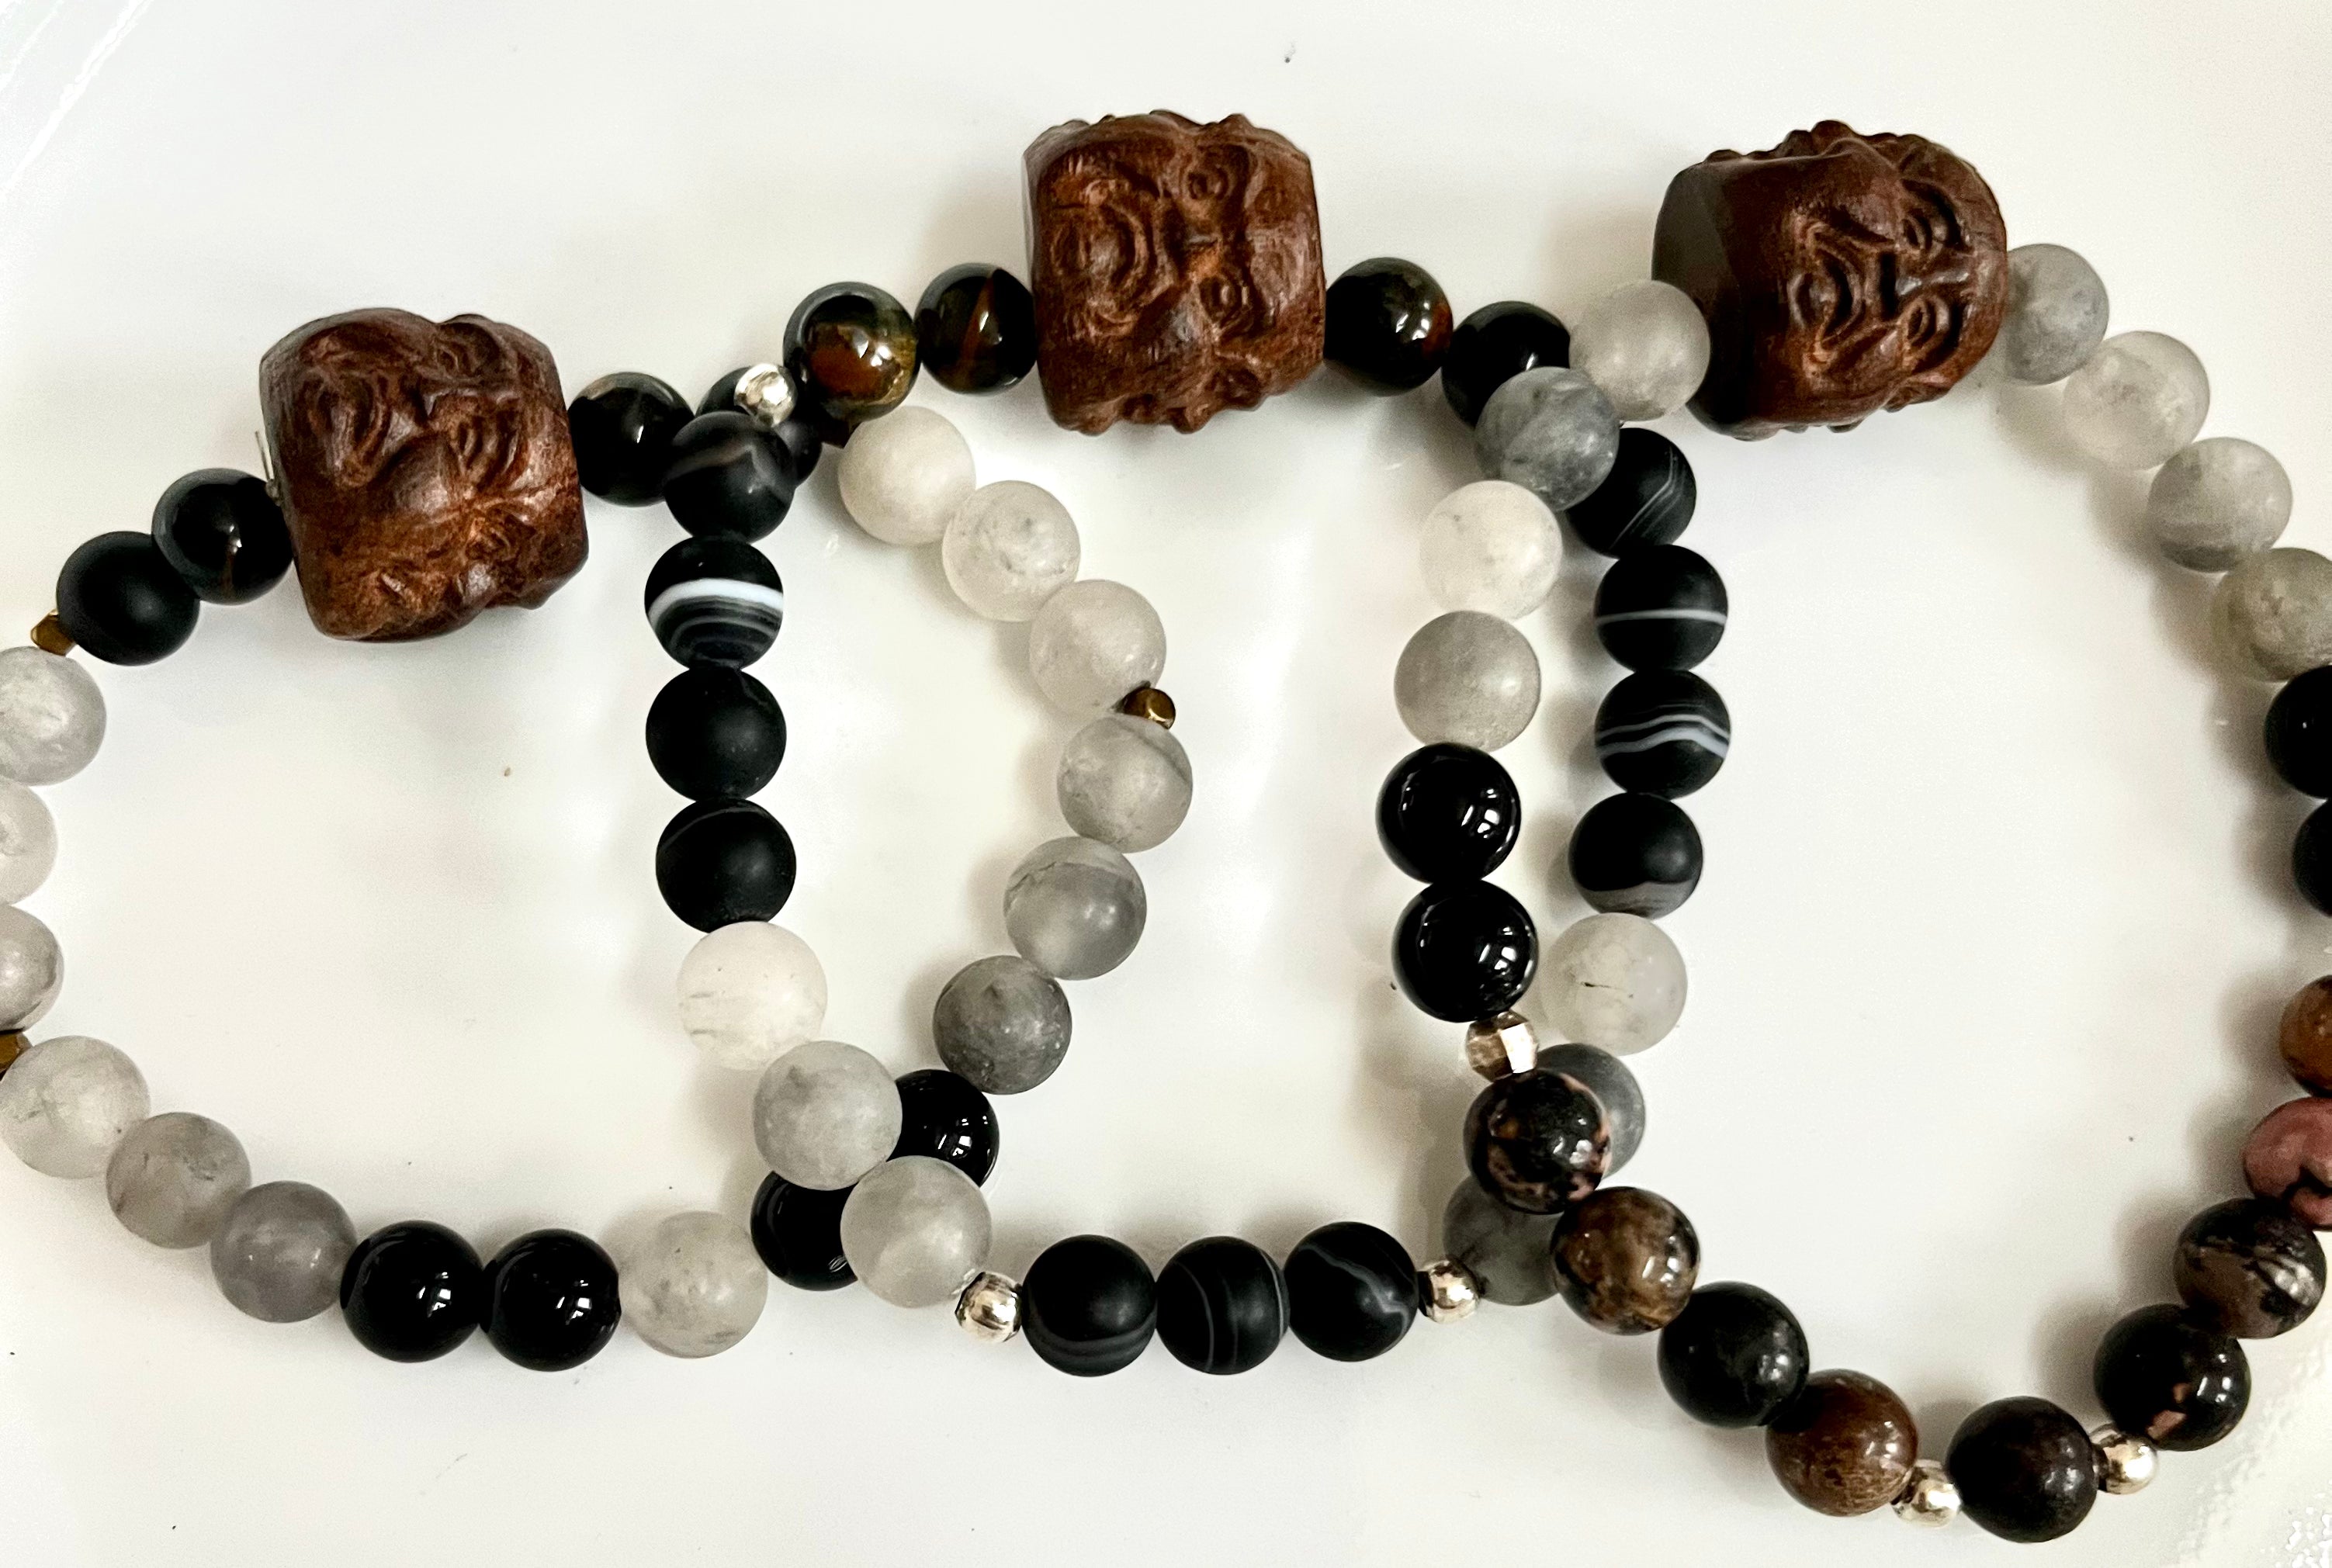 Sale Agar Wood Carved Buddha Head Bead Wrist malas in blacks